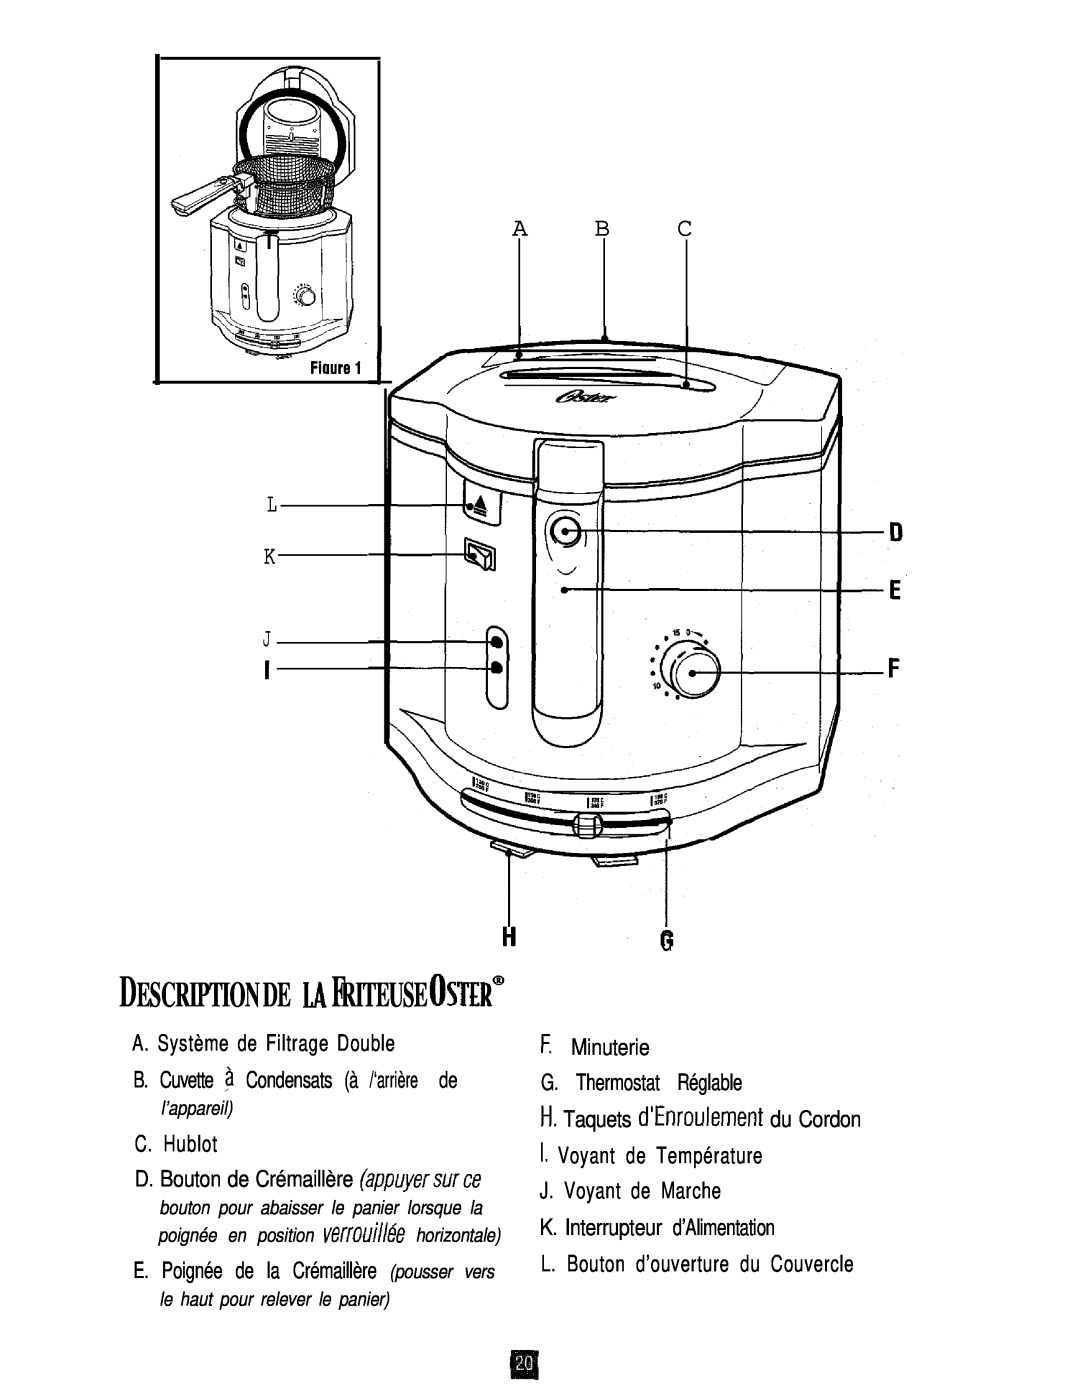 Oster 3246 manual A. Système de Filtrage Double, C. Hublot, F. Minuterie G. Thermostat Réglable, L K J, A B C, l’appareil 